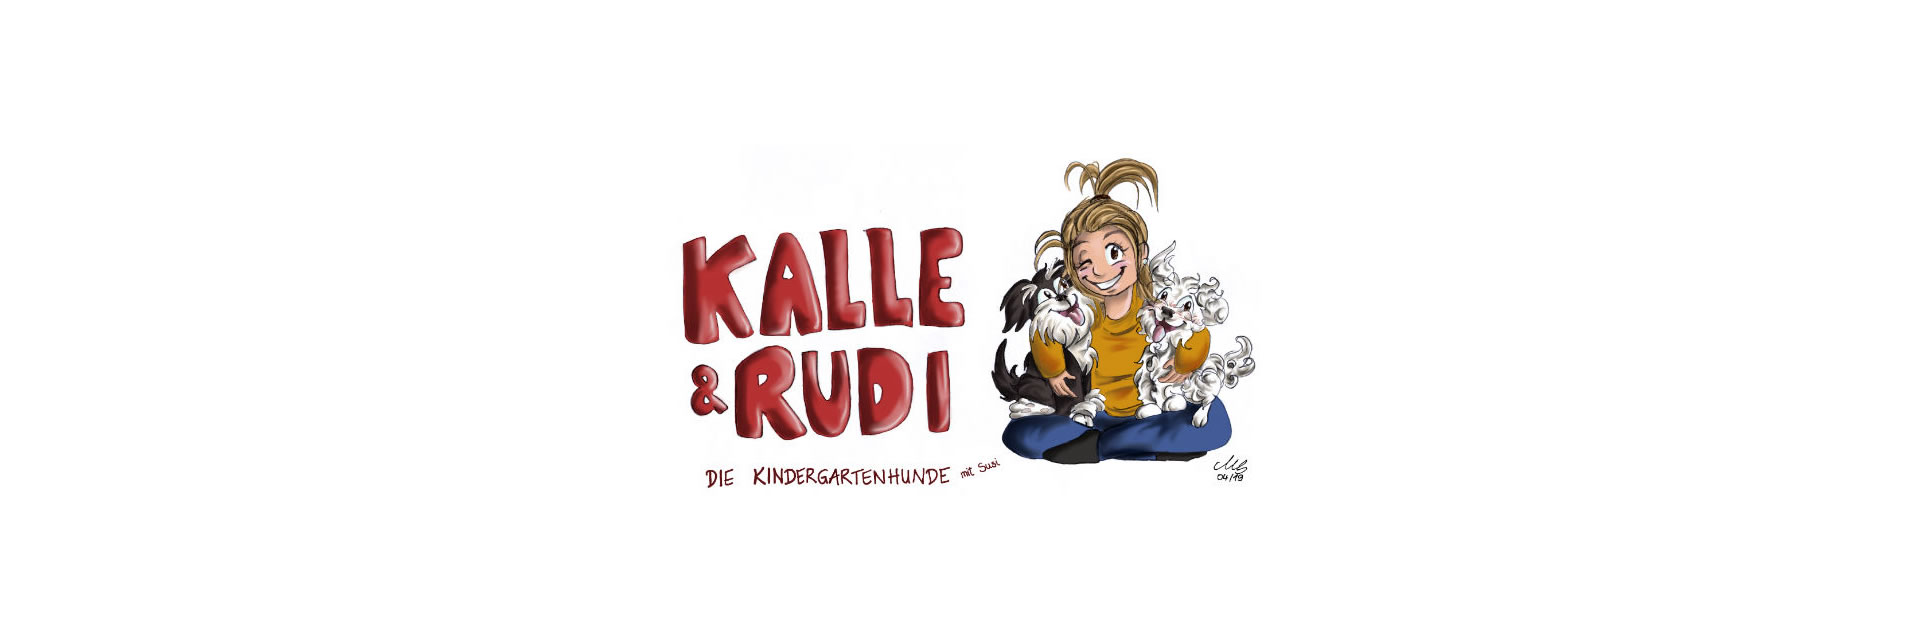 Kalle und Rudi, die Kindergartenhunde (Zeichnung)